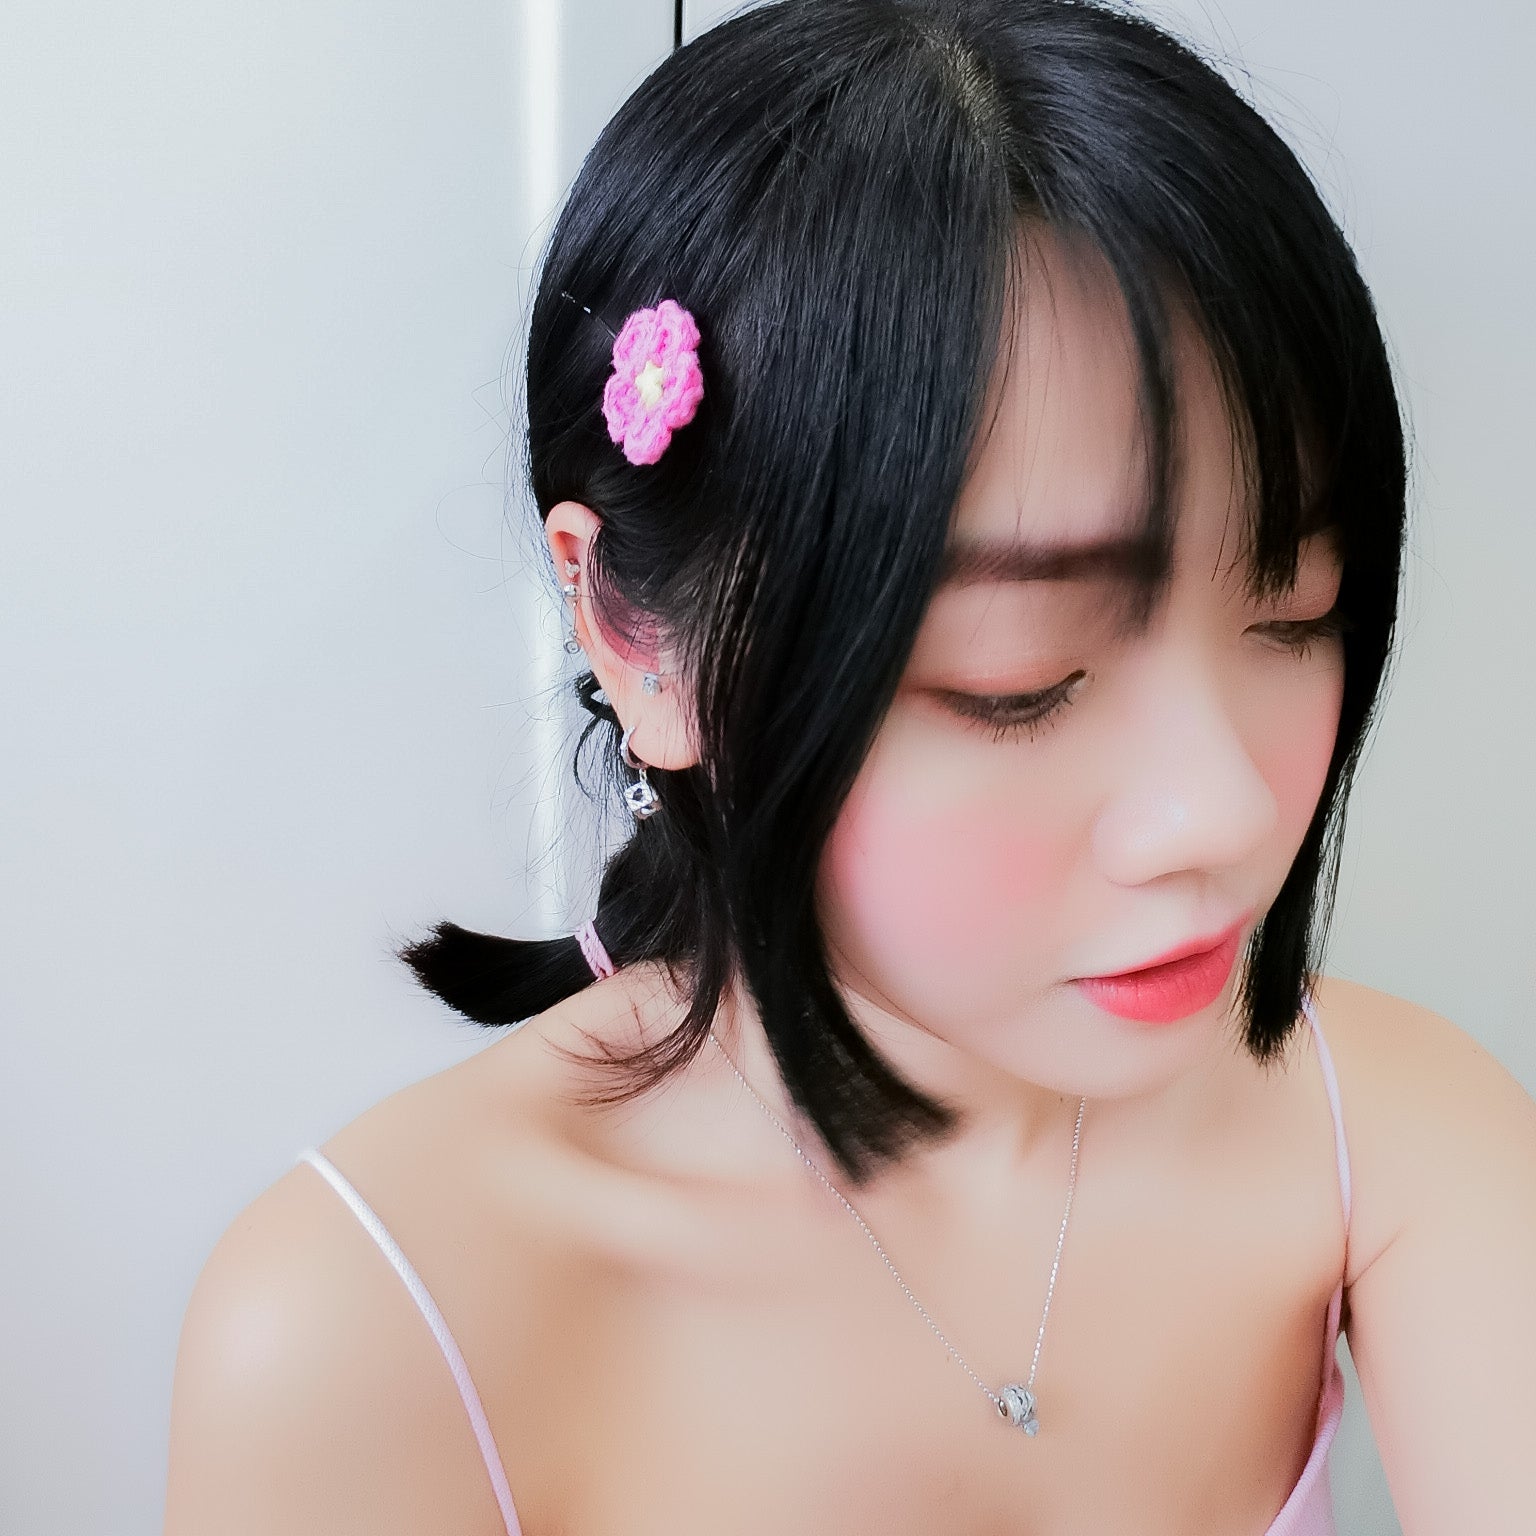 Sakura Hairpin - Hot Pink